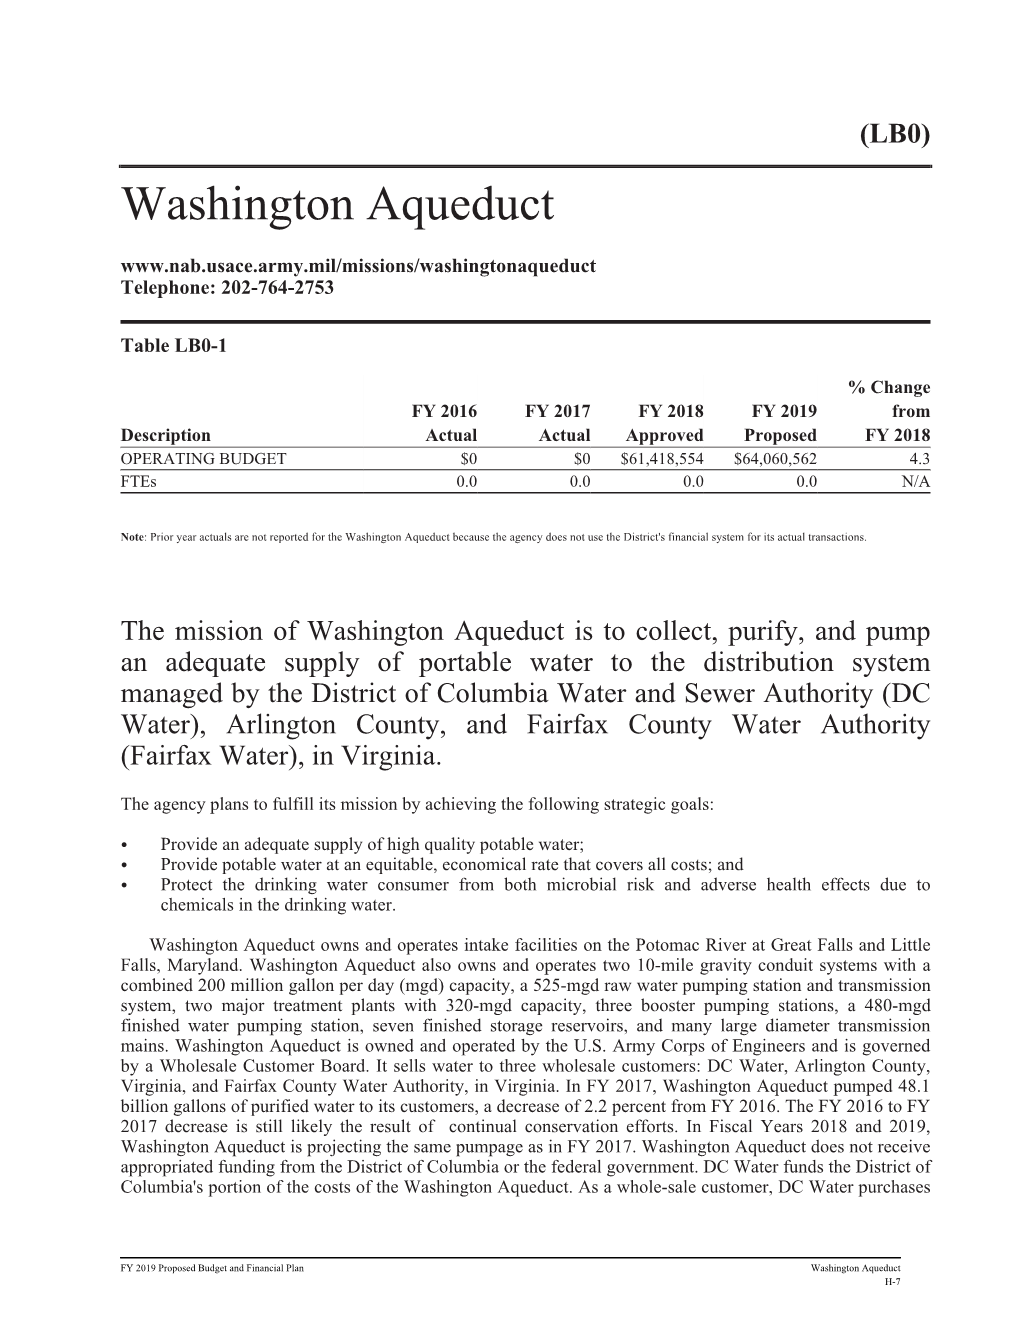 Washington Aqueduct Telephone: 202-764-2753